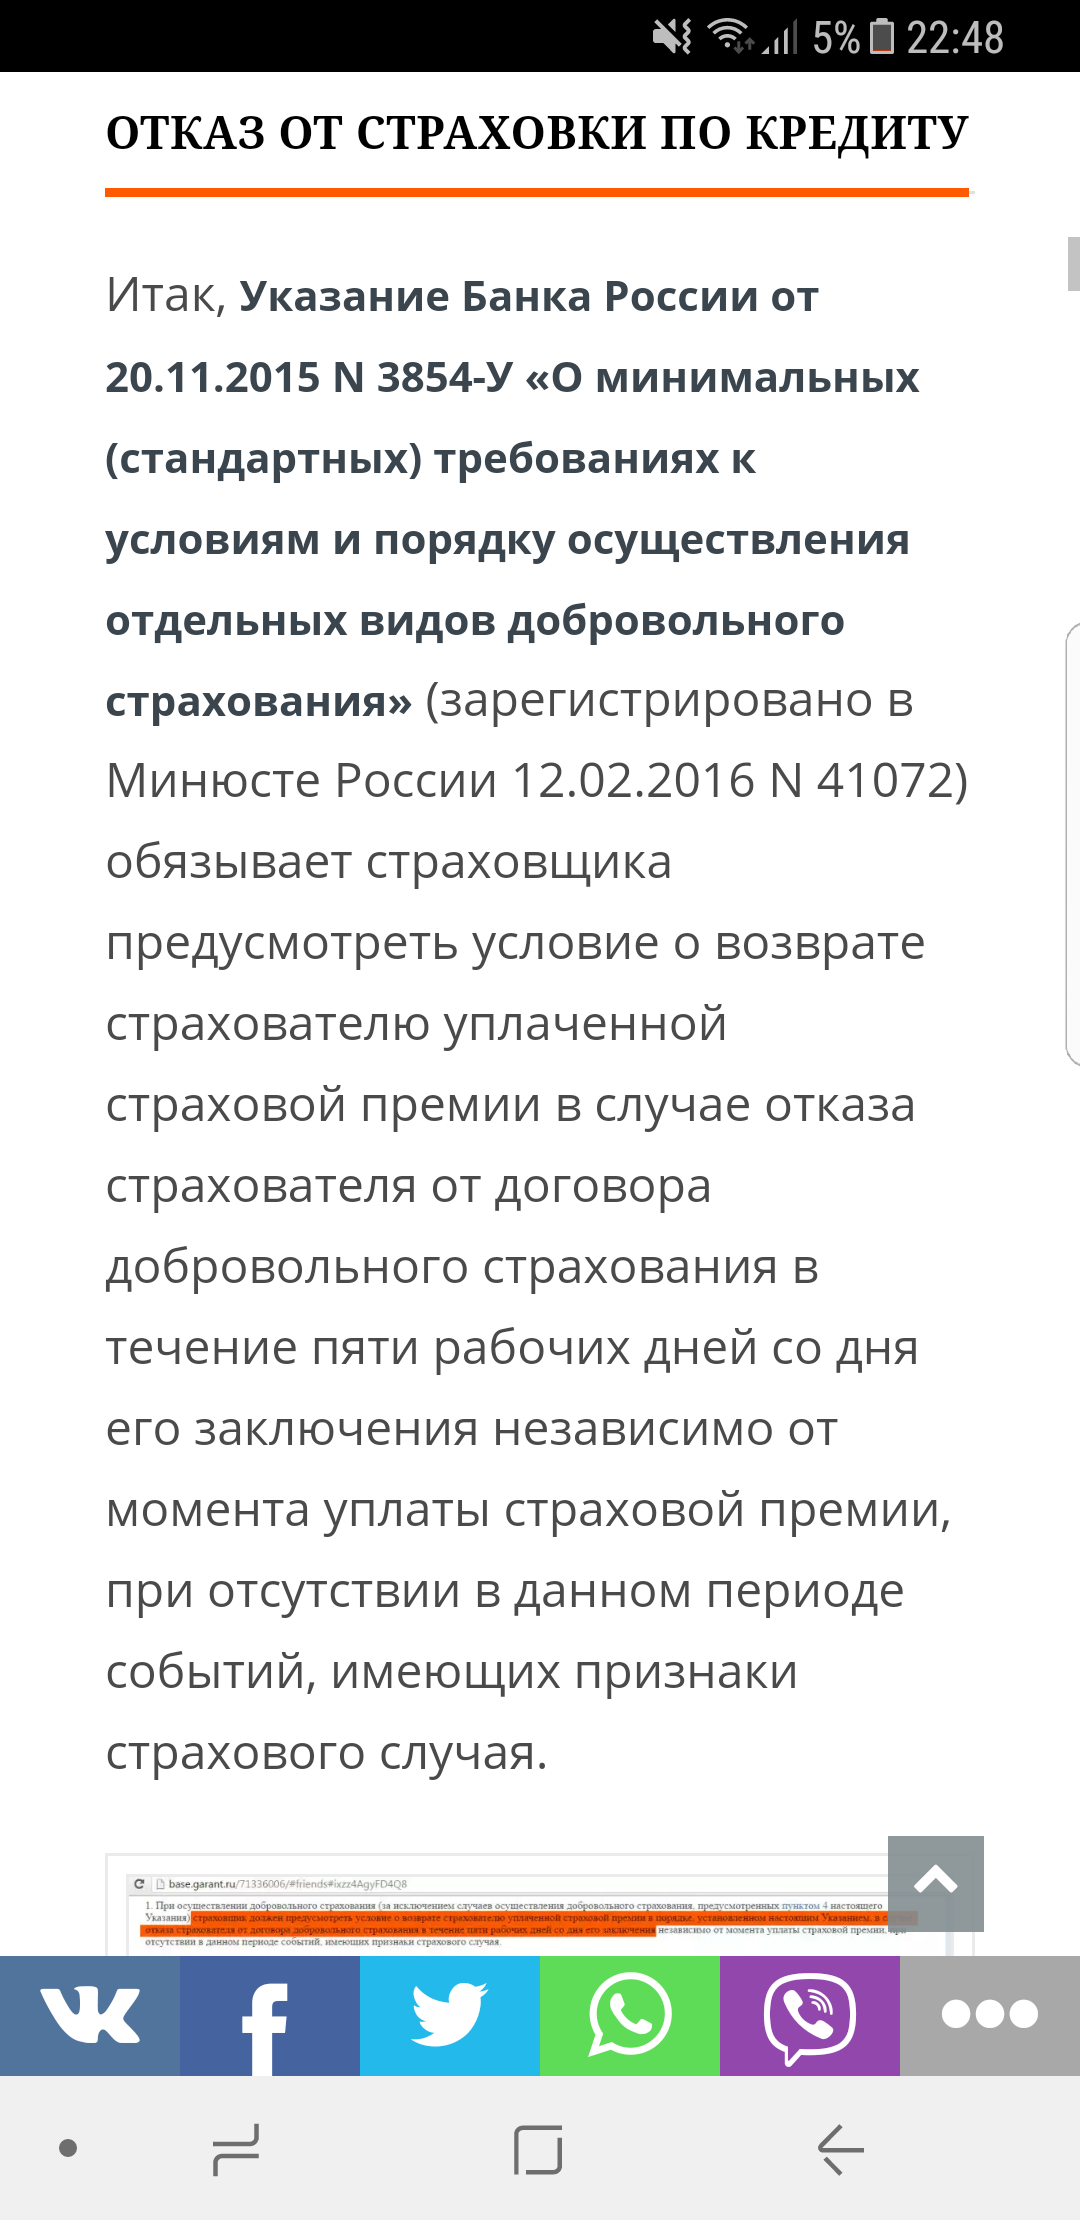 Саяногорск Инфо - screenshot_20170622-224806.png, Скачано: 470